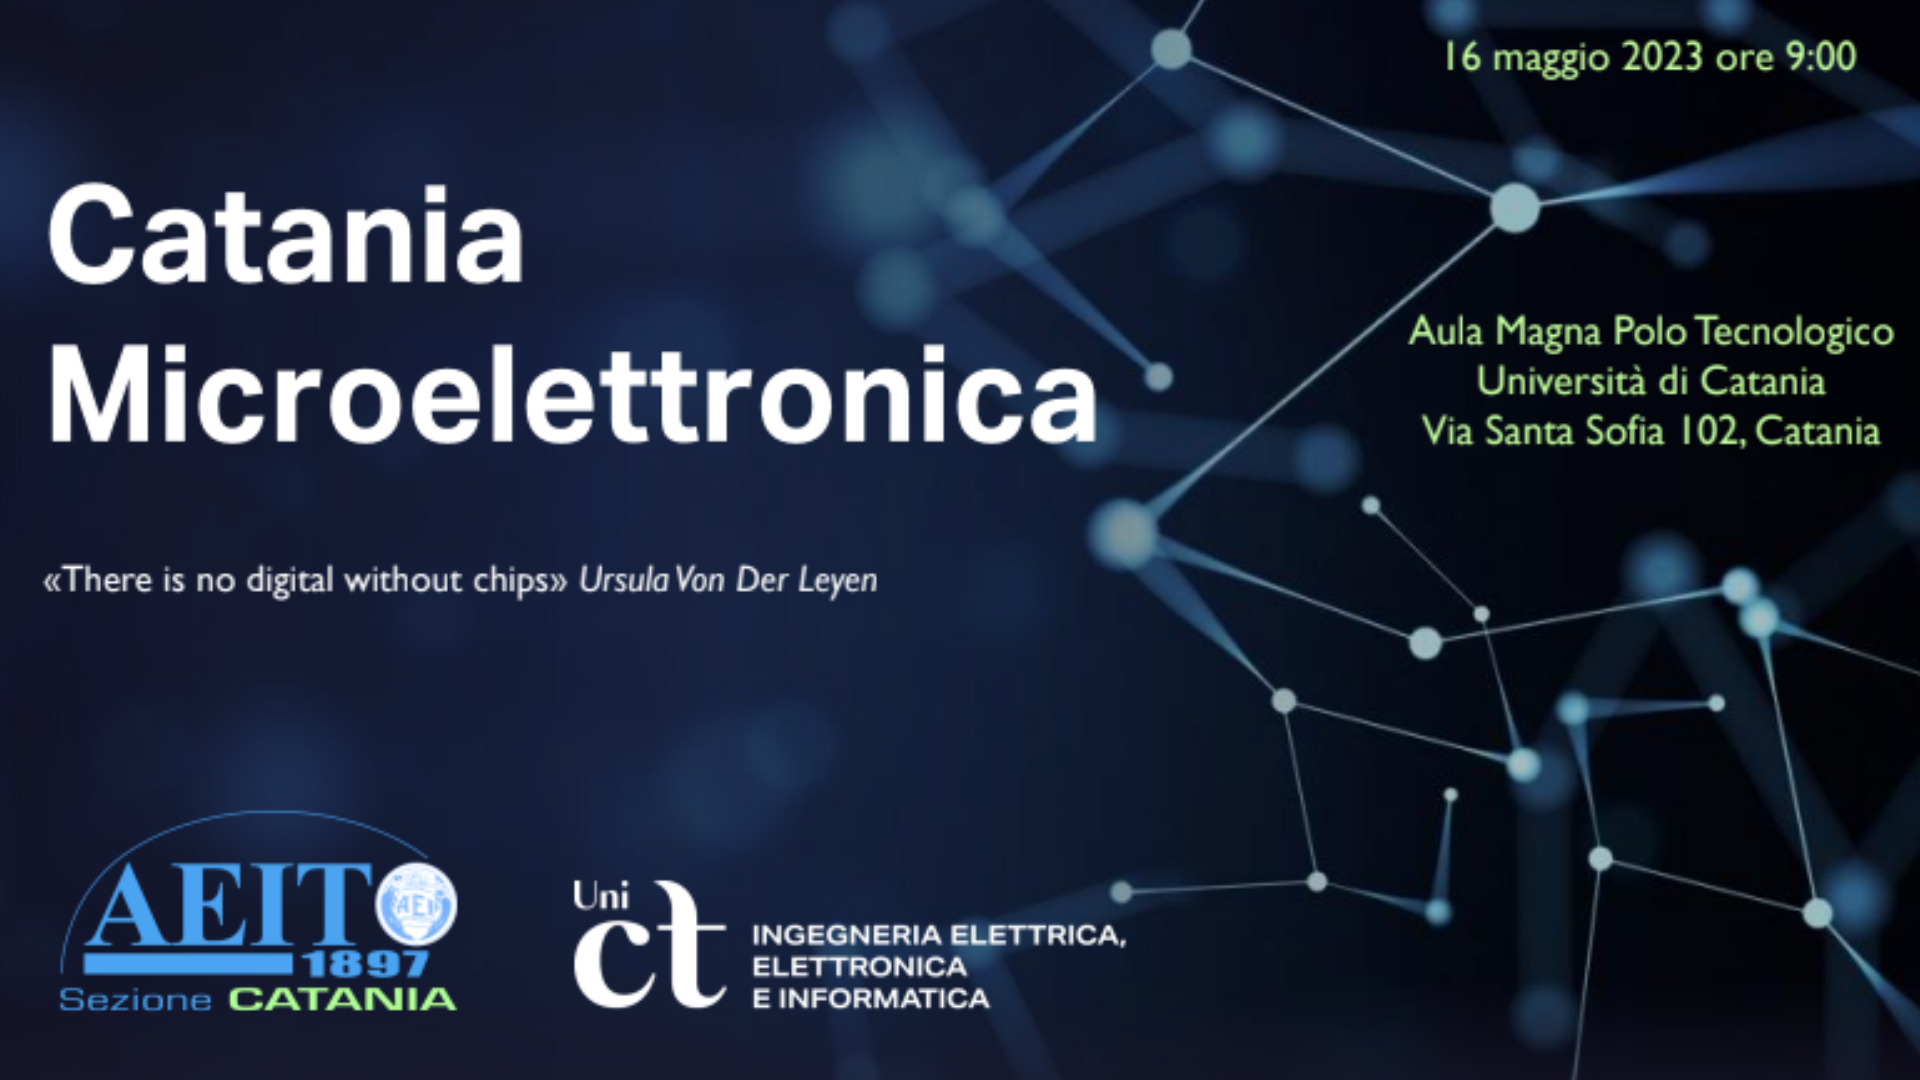 Catania microelettronica, un incontro per discutere di innovazione digitali<br>«Sul tema Unict è uno dei principali poli universitari a livello nazionale»